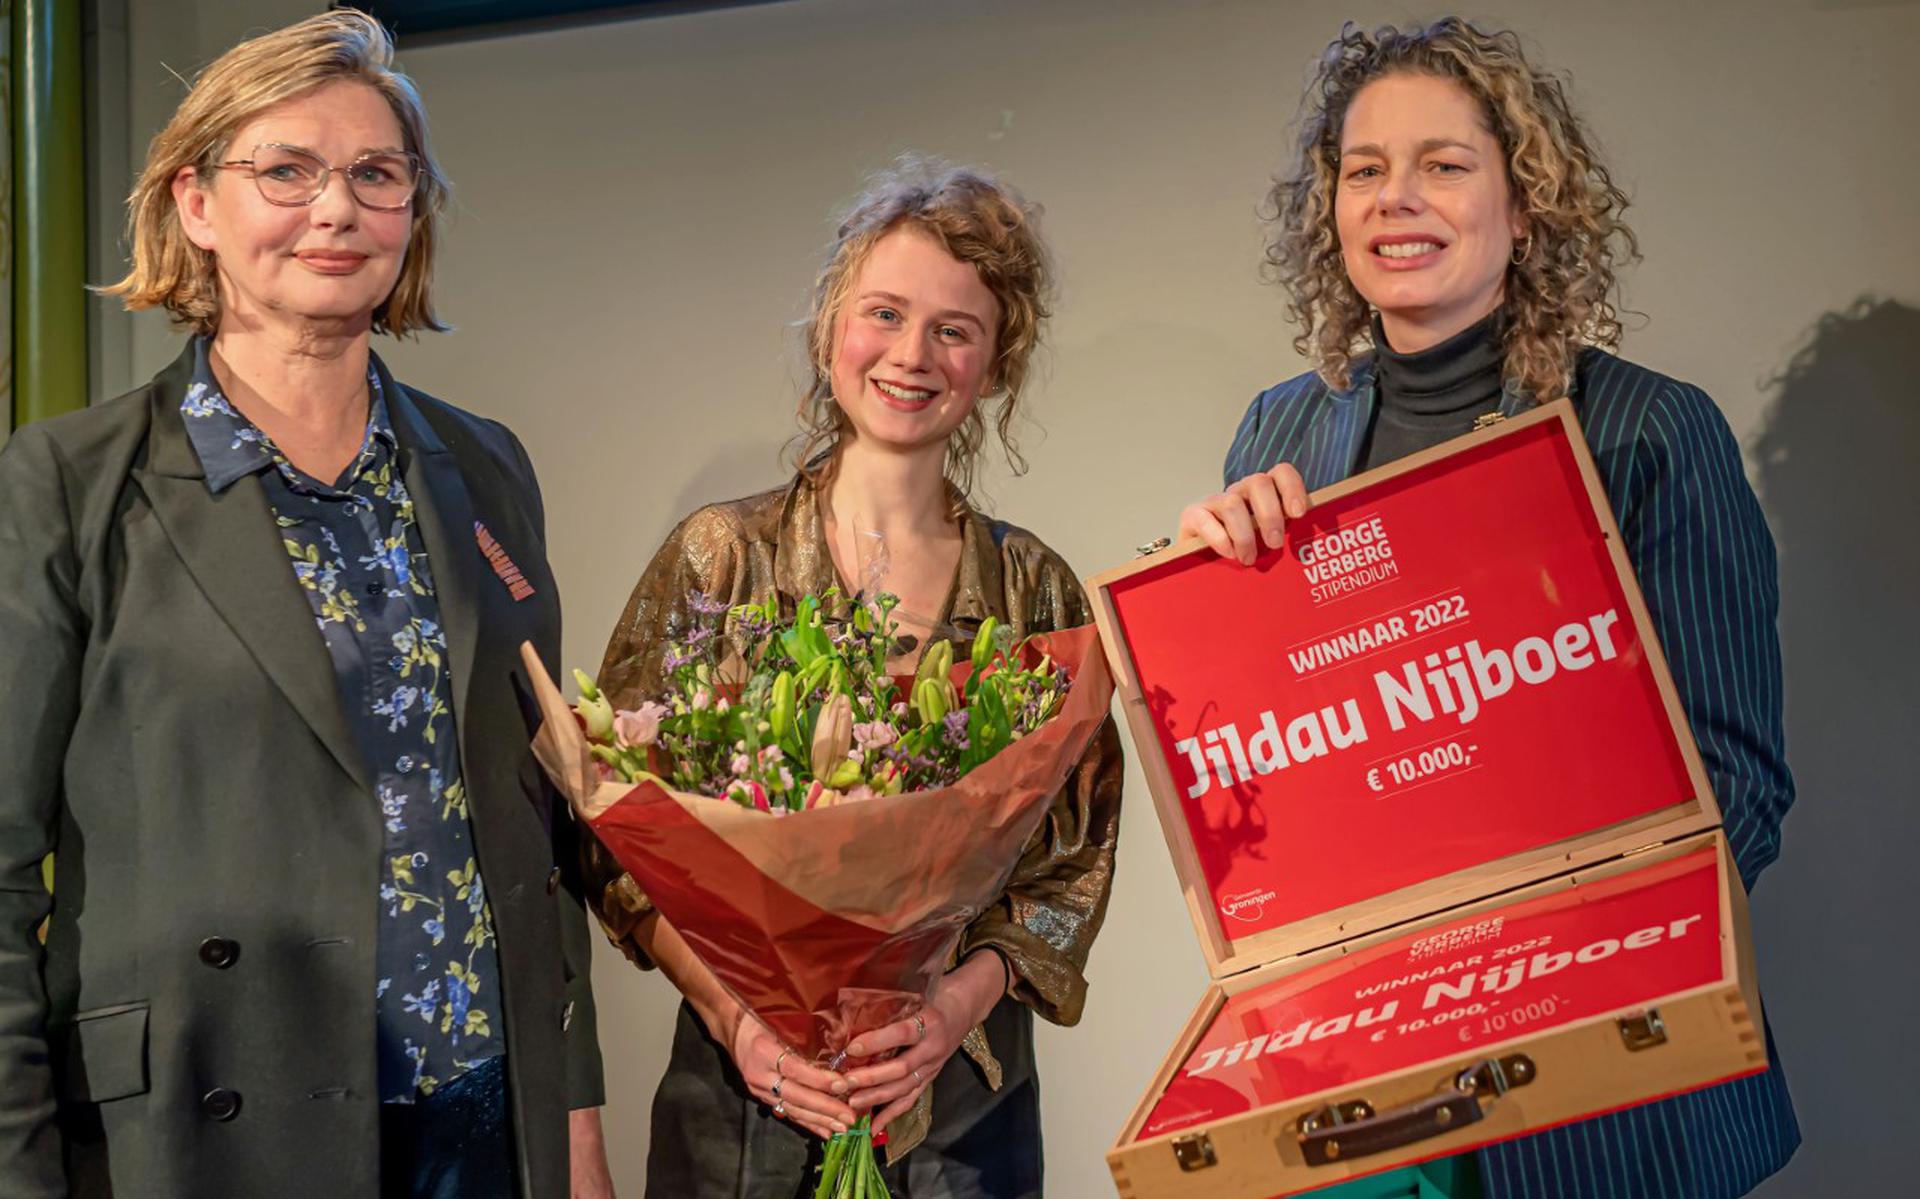 Kunstenaar Jildau Nijboer temidden van juryvoorziiter Dorothea van der Meulen (links) en wethouder Kirsten de Wrede.